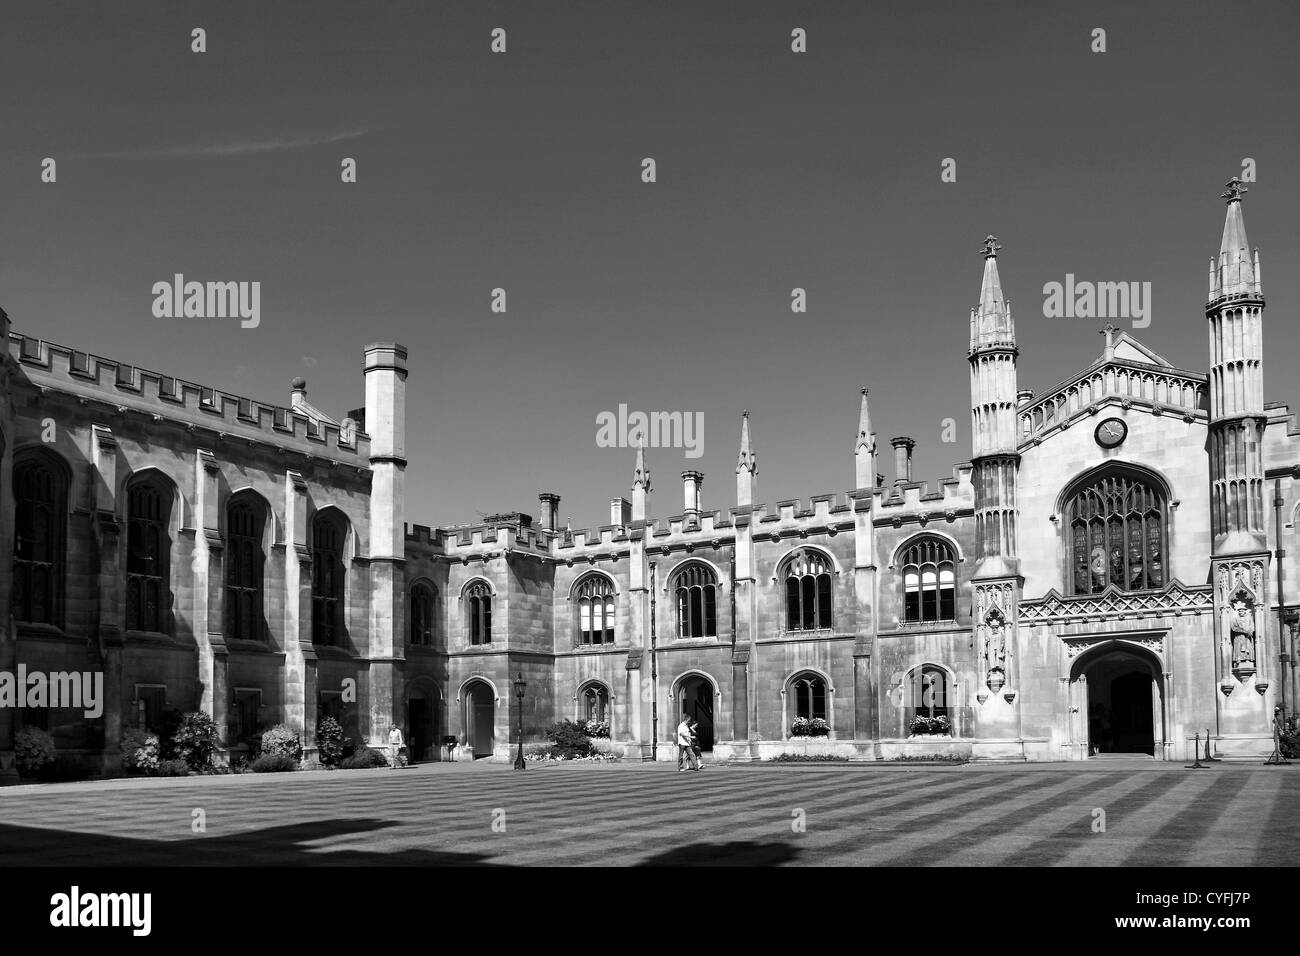 Schwarz / weiß Bild, Außenansicht des Corpus Christi College ein University College, Cambridge City, Cambridgeshire, England, UK Stockfoto